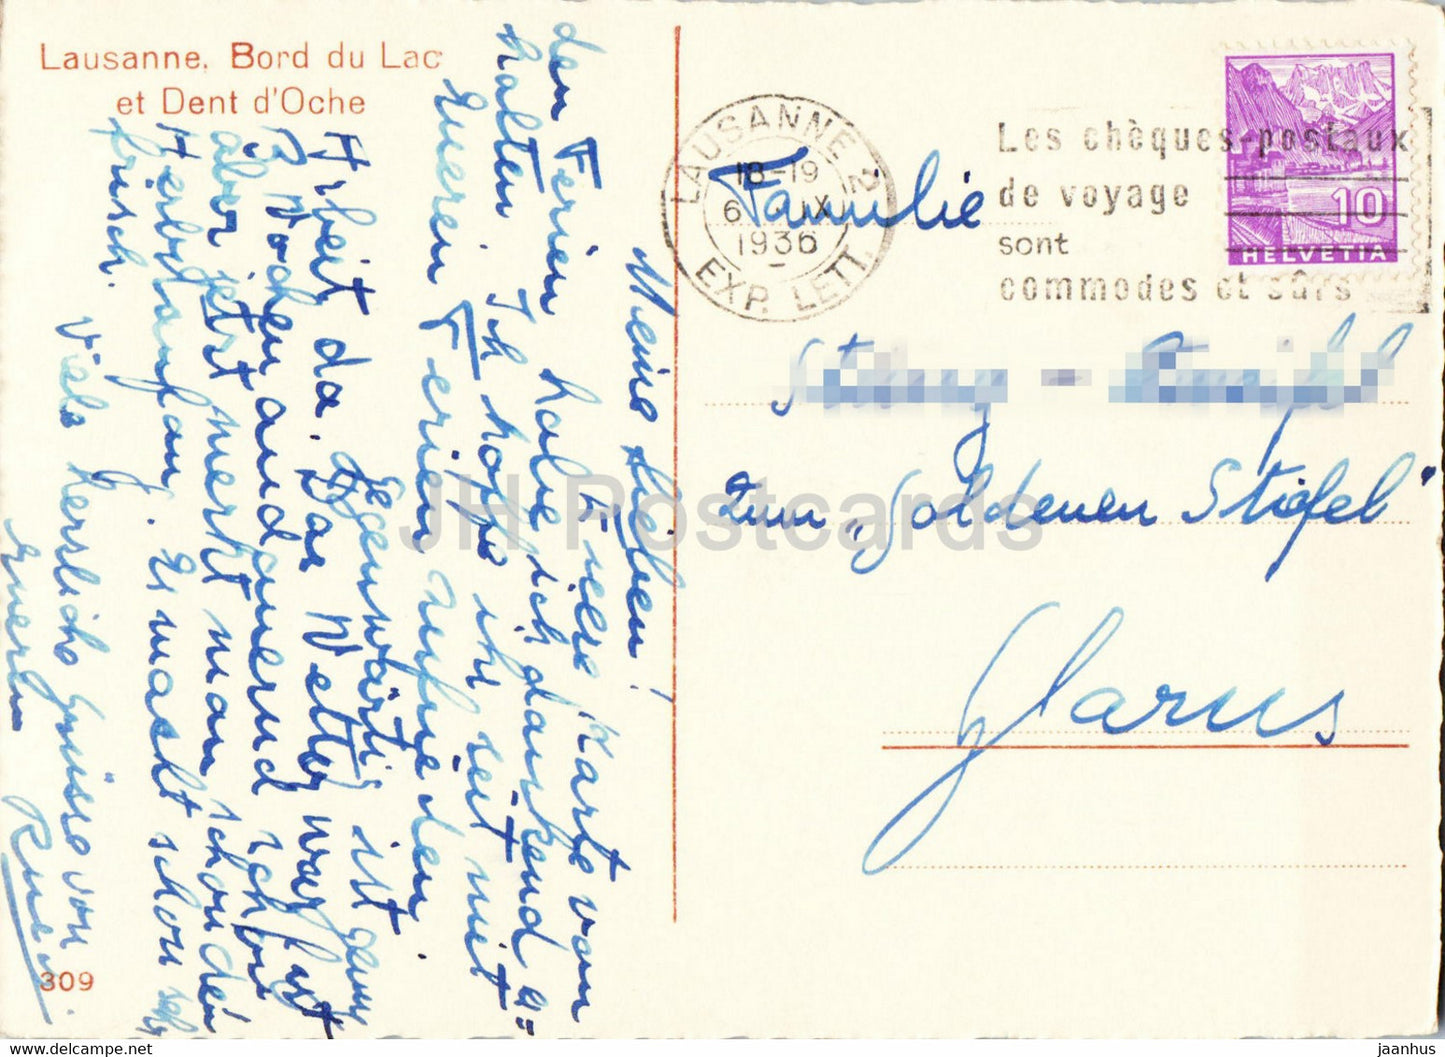 Lausanne - Bord du Lac et Dent d'Oche - 309 - carte postale ancienne - 1936 - Suisse - occasion